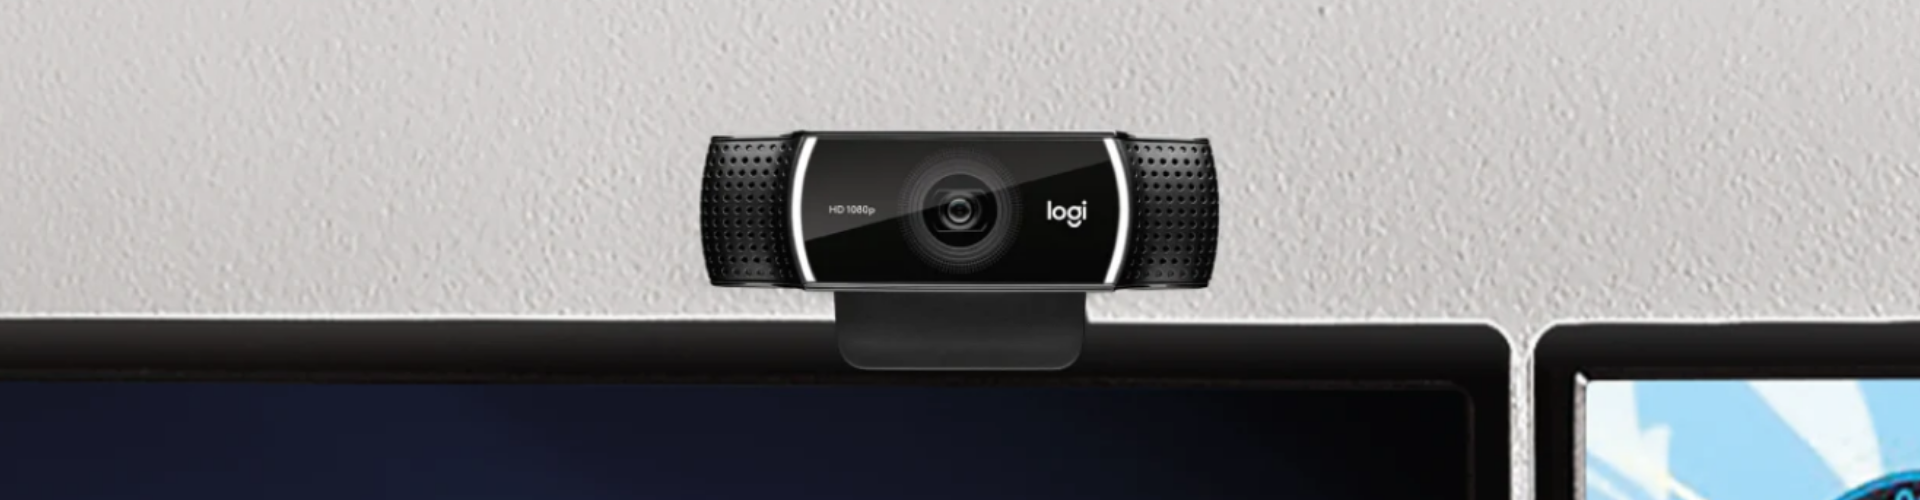 Mua webcam hội nghị truyền hình cần chú ý những gì